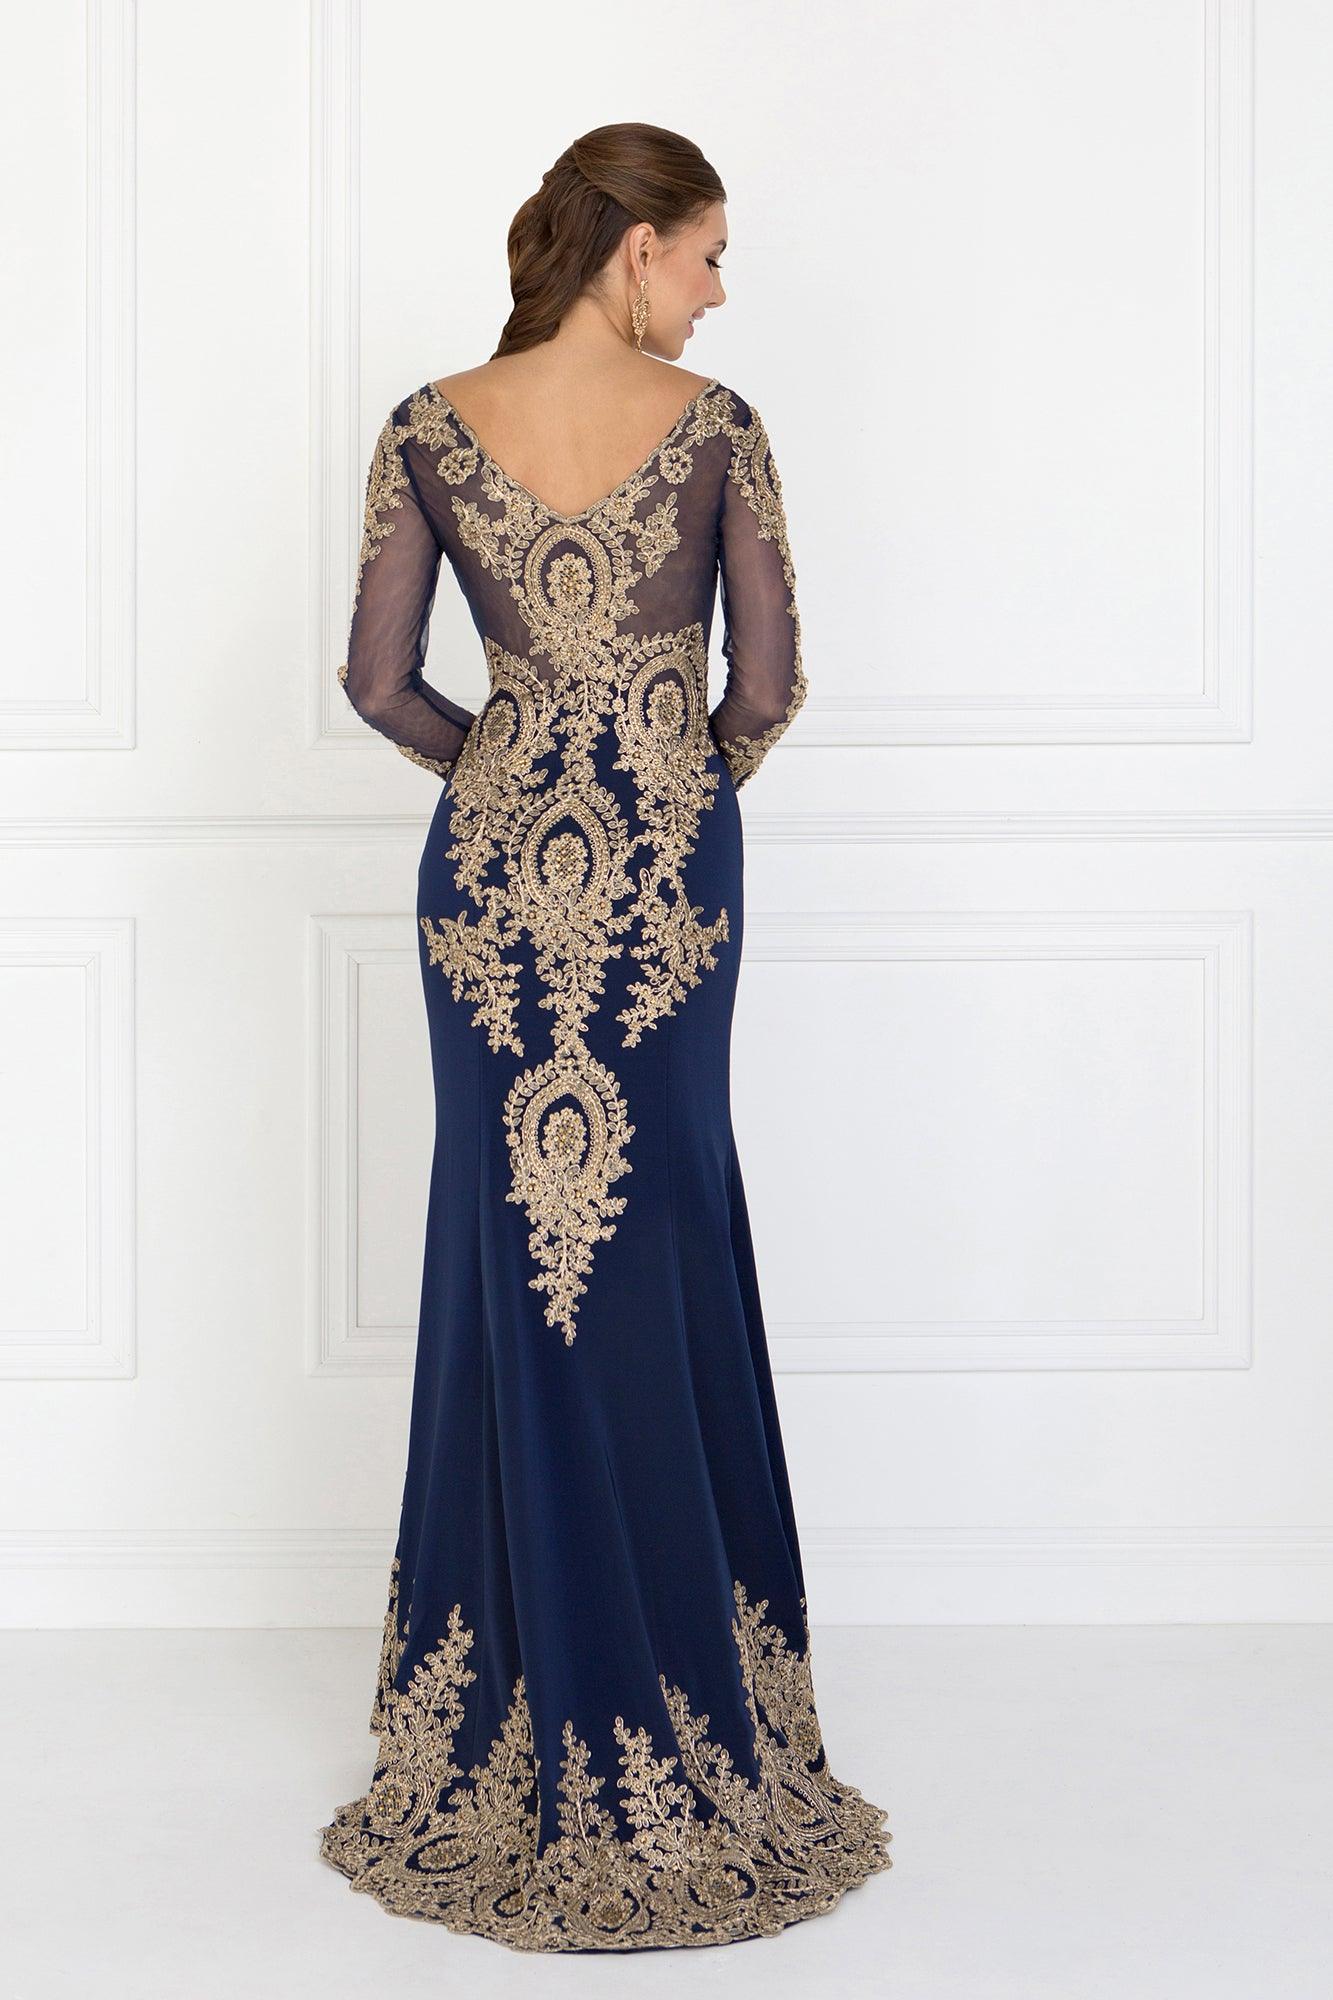 Long Sleeve Dress Formal Evening Gown - The Dress Outlet Elizabeth K